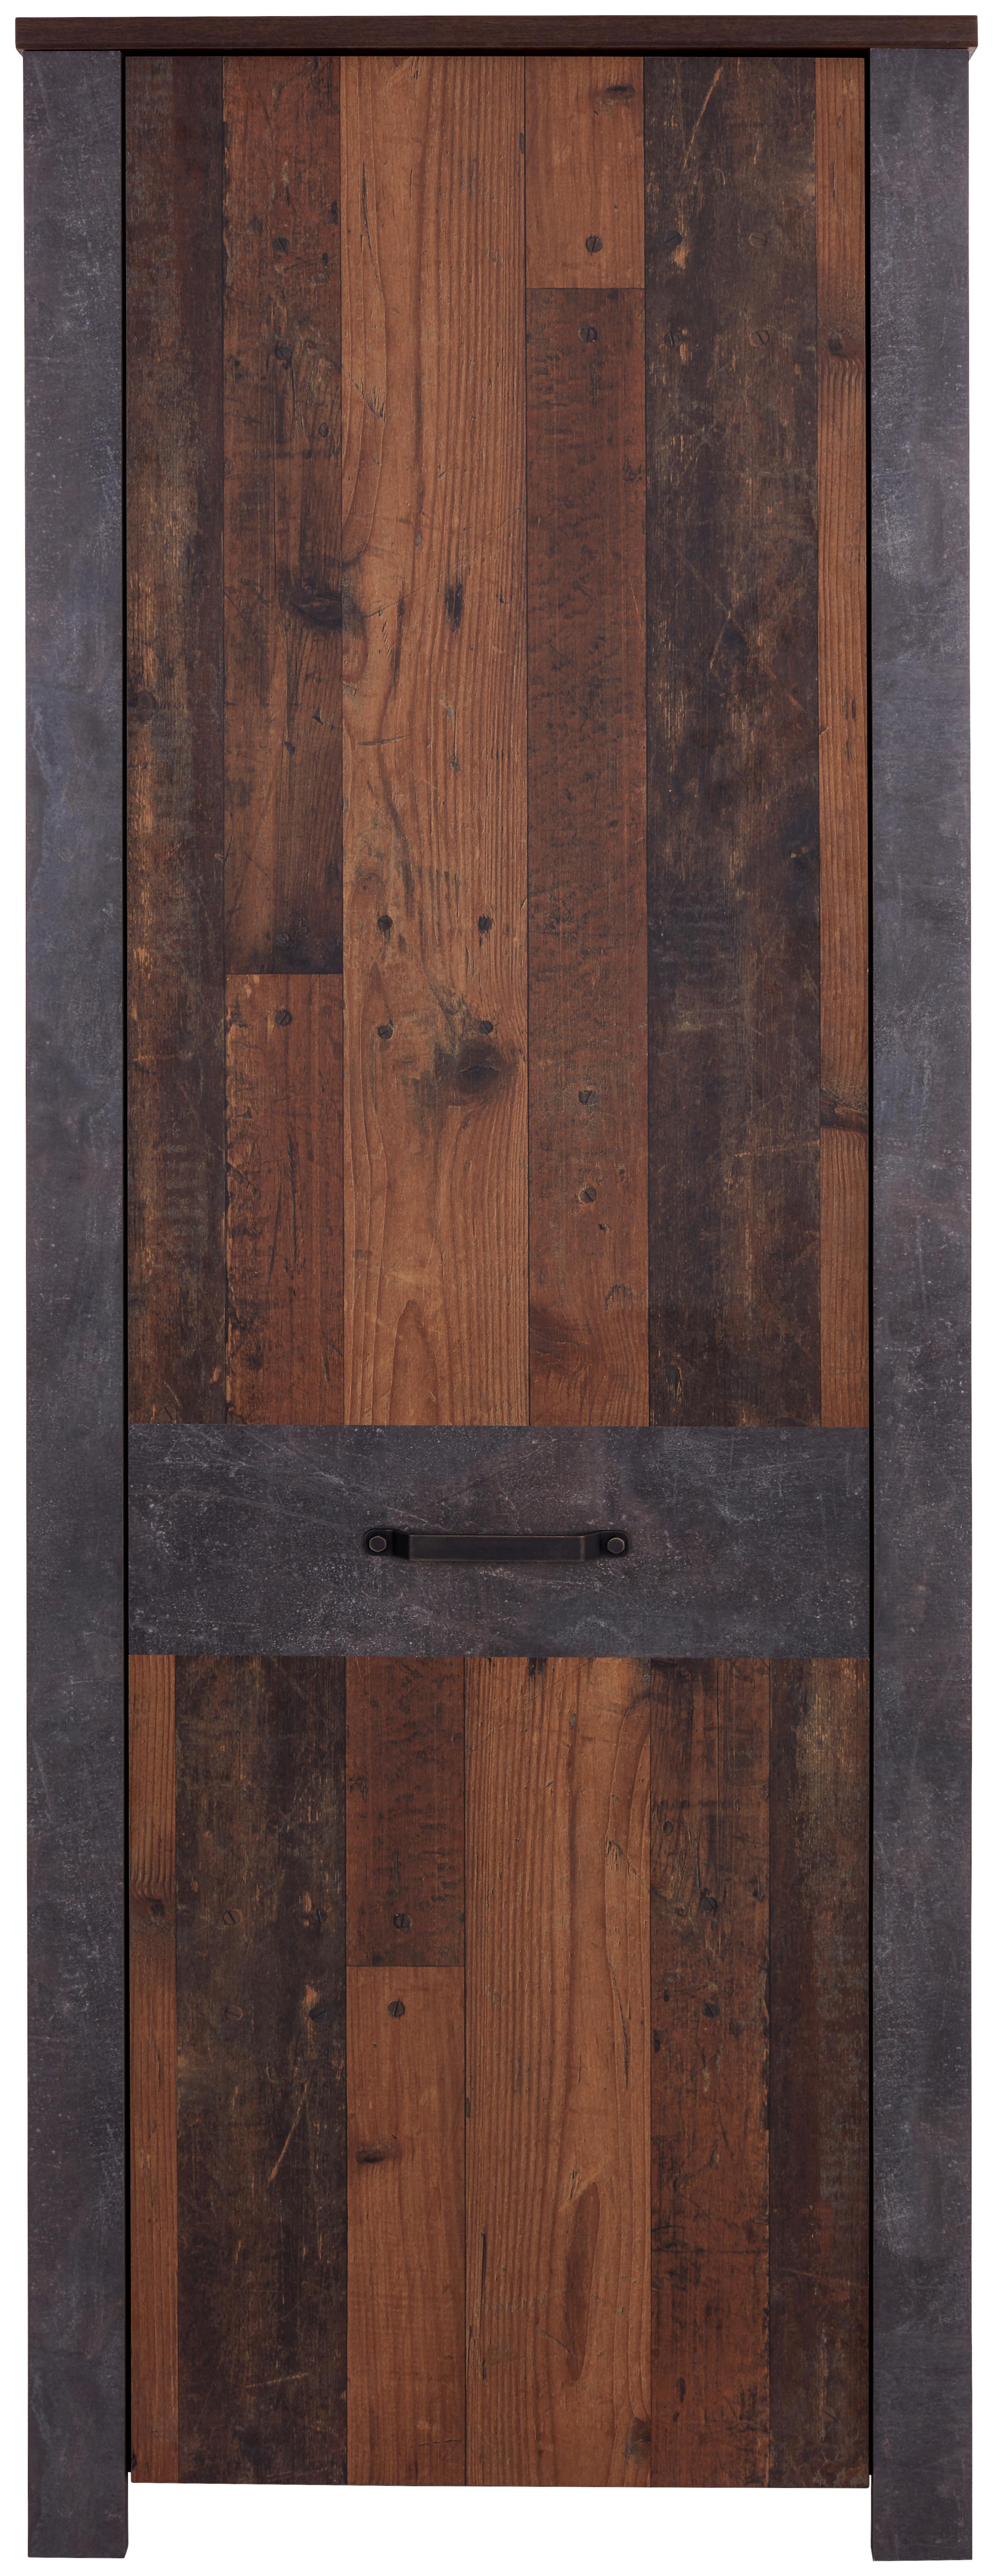 Šatní Skříň Ontario - šedá/barvy dubu, Trend, kompozitní dřevo/plast (68,4/200/37cm) - Ondega